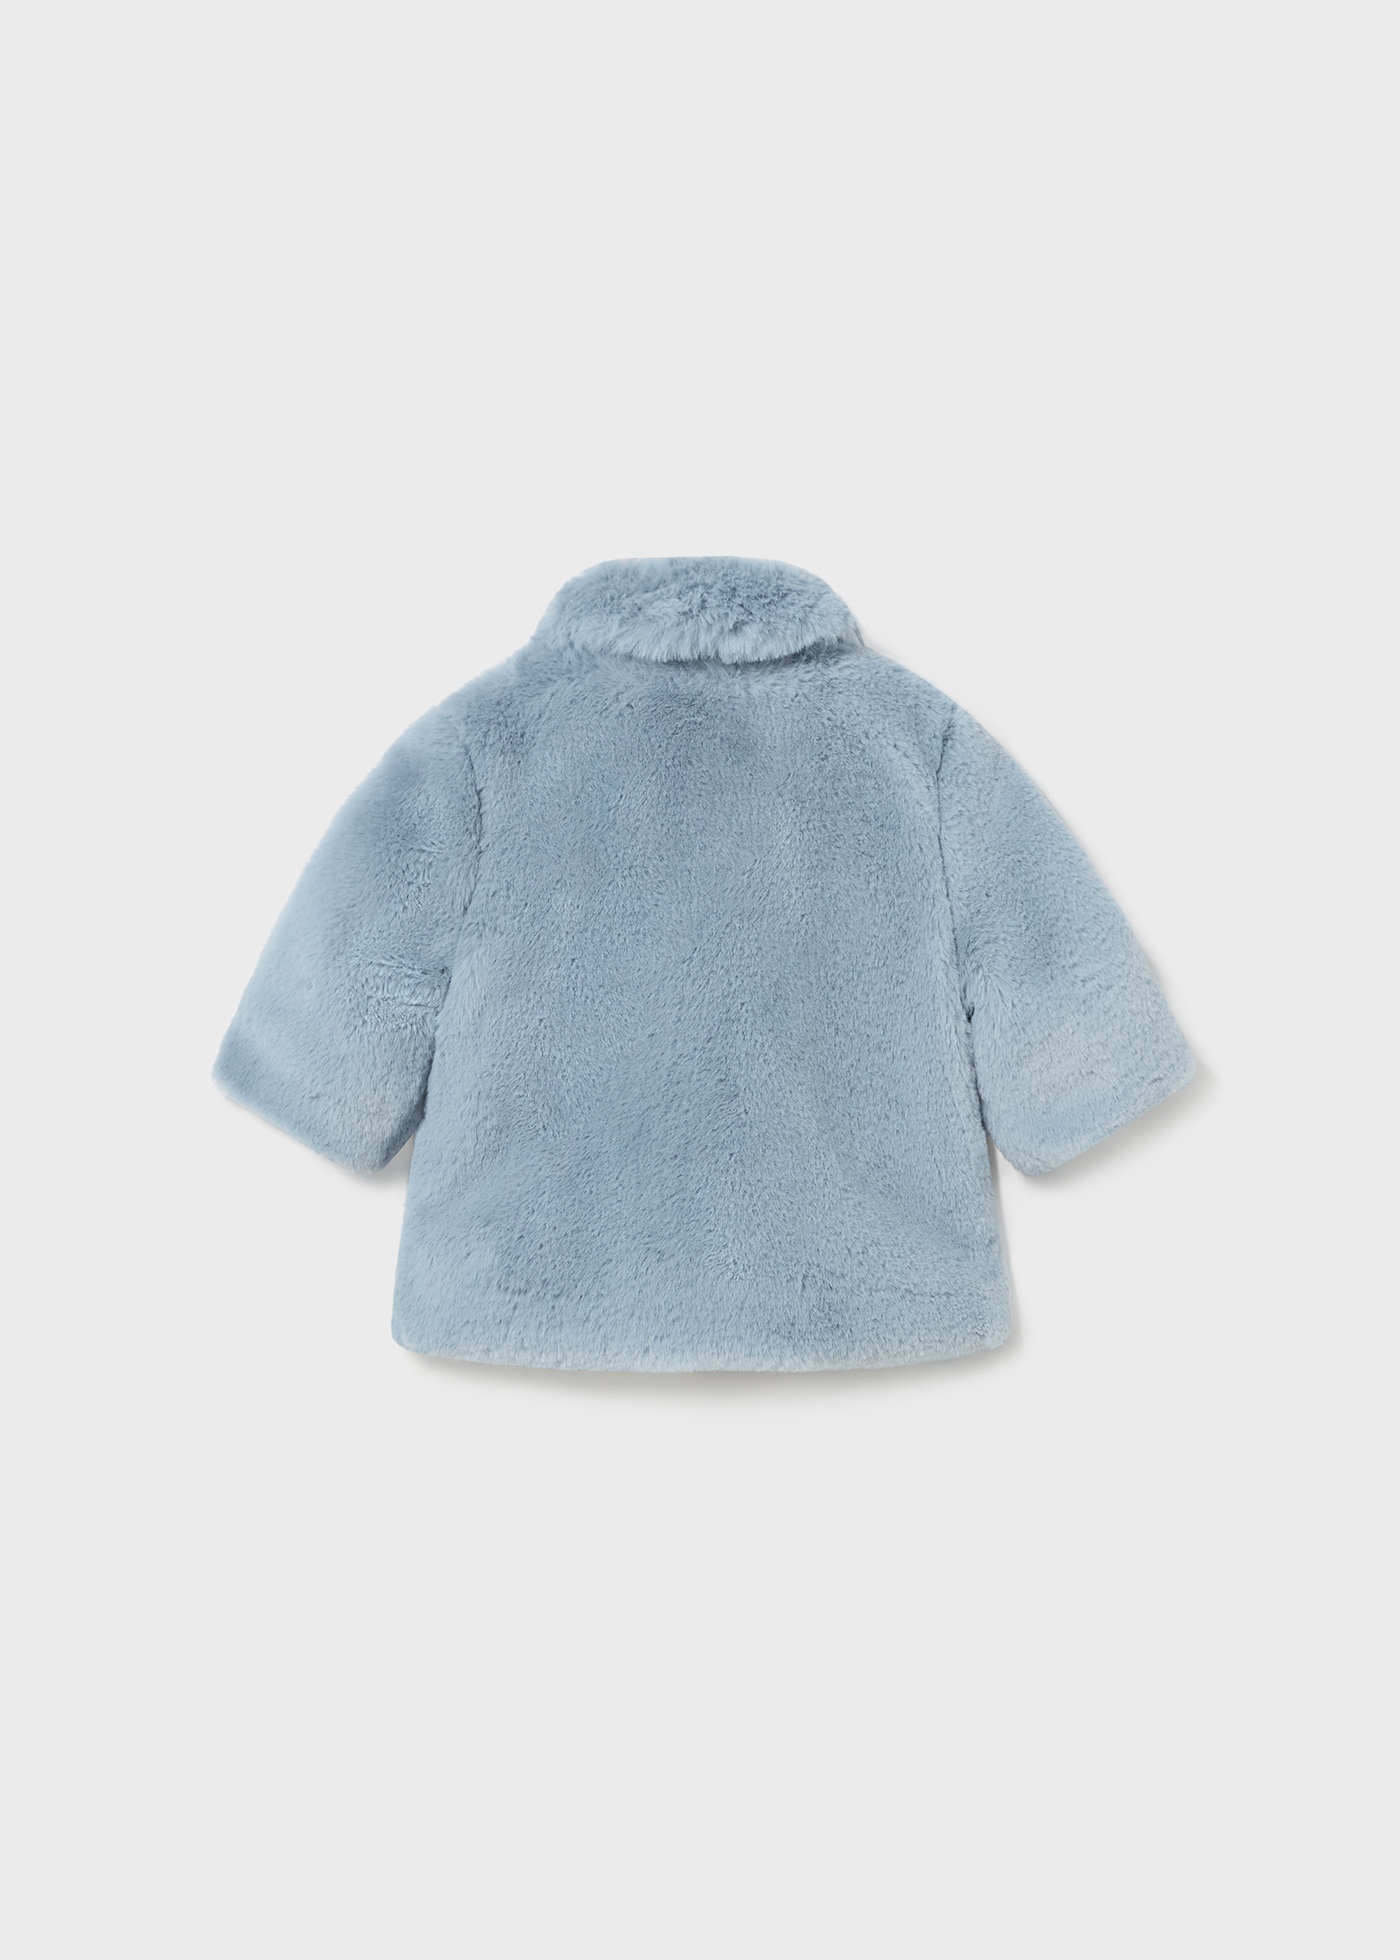  Mayoral - Abrigo de tela de cordero para bebé-niño